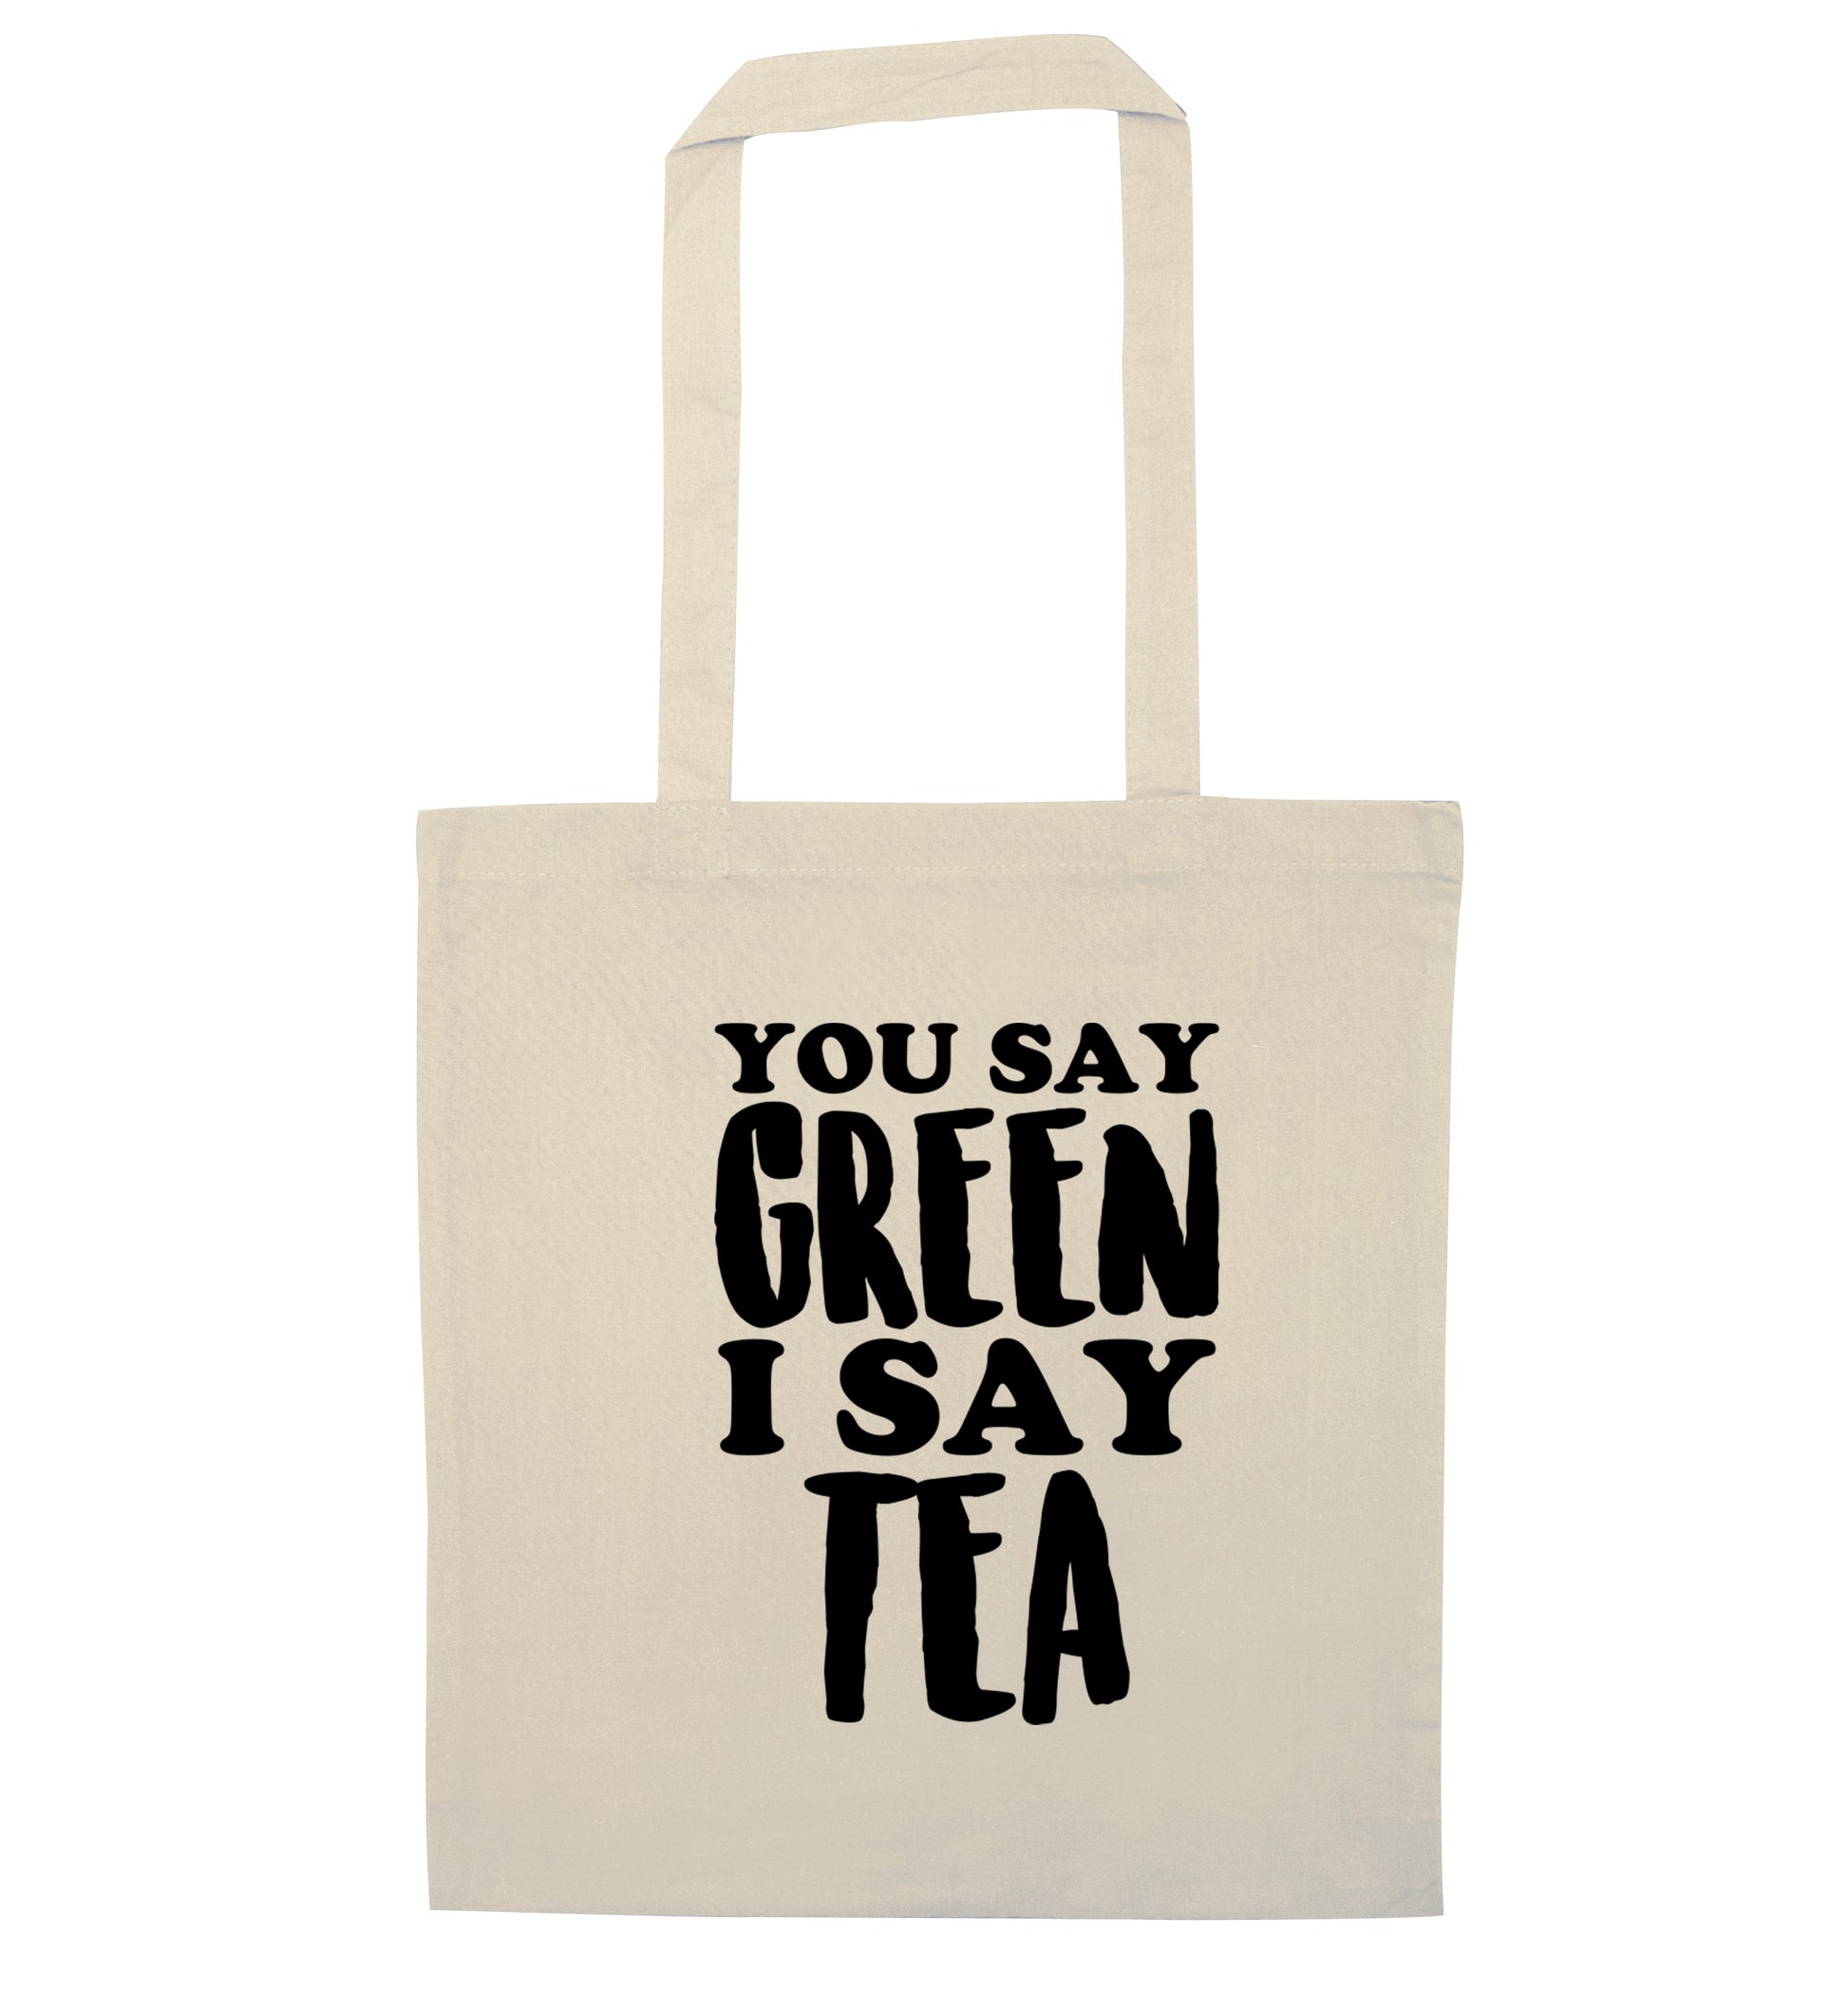 You say green I say tea! natural tote bag